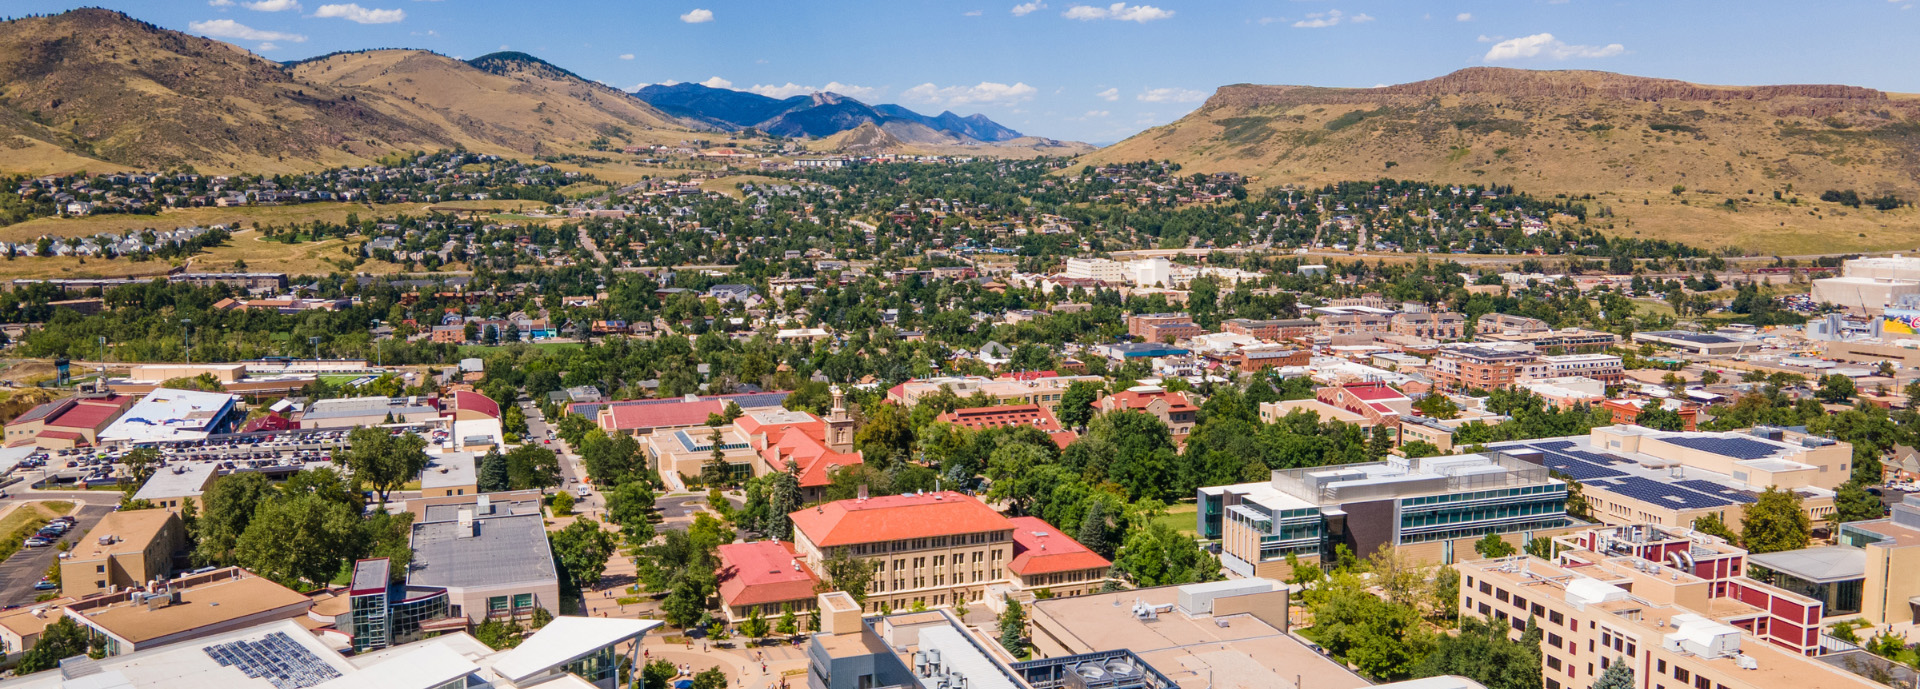 Aerial view of Colorado School of Mines campus